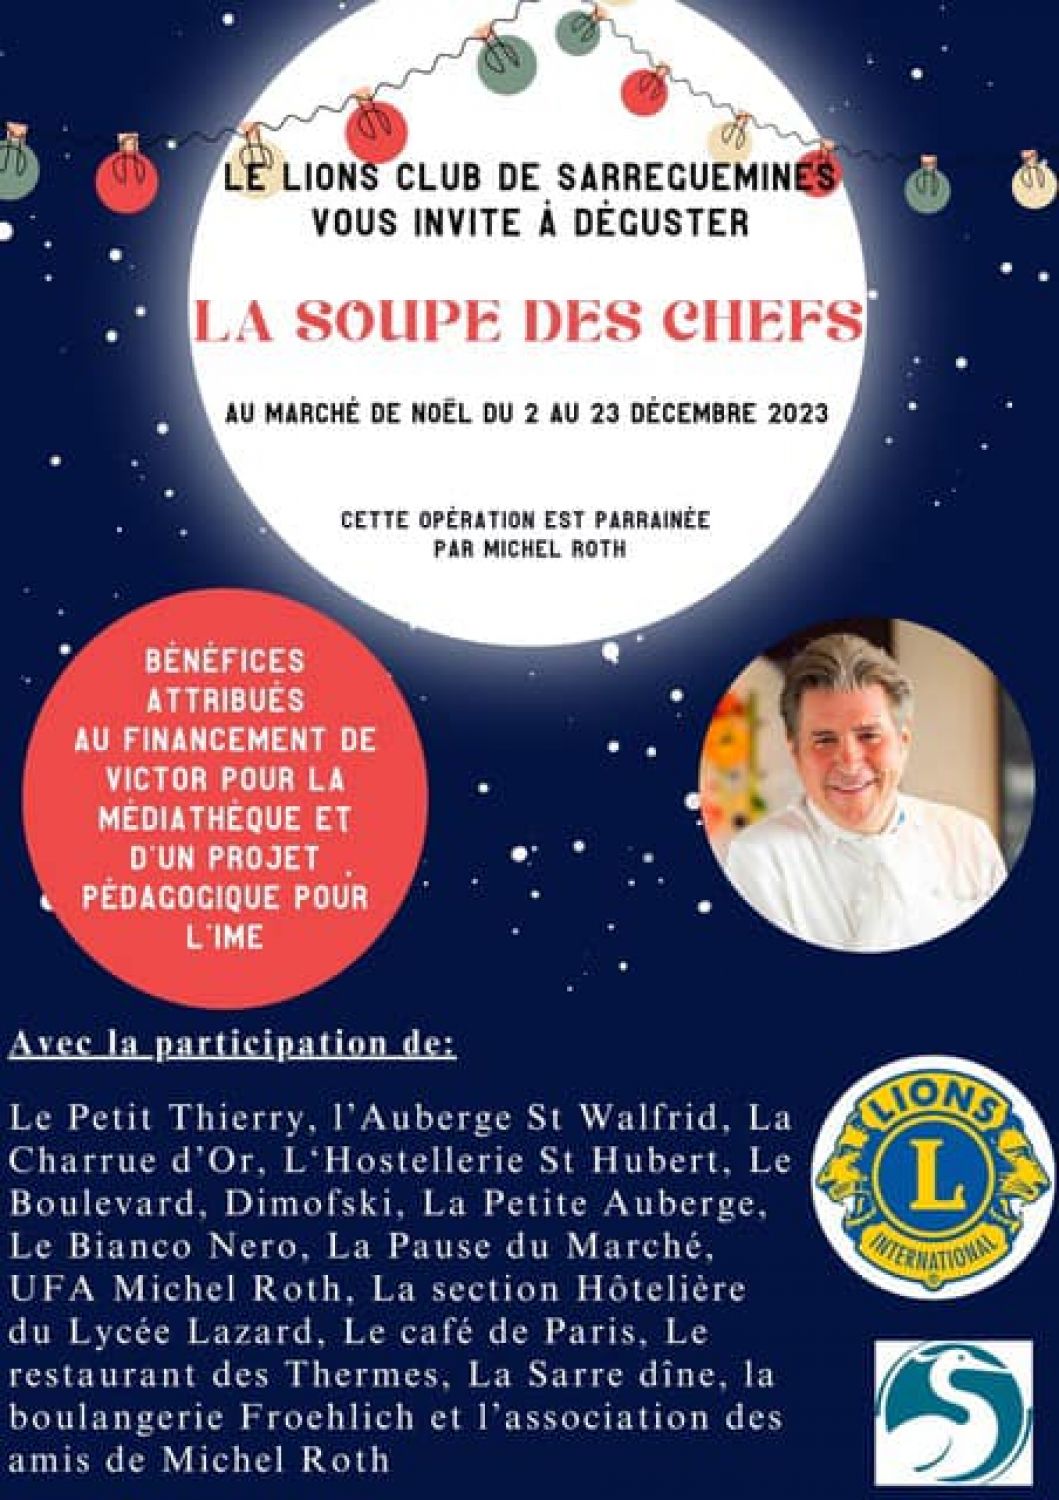 Le Lions Club de Sarreguemines réitère l’opération « soupe des chefs » au marché de Noël 